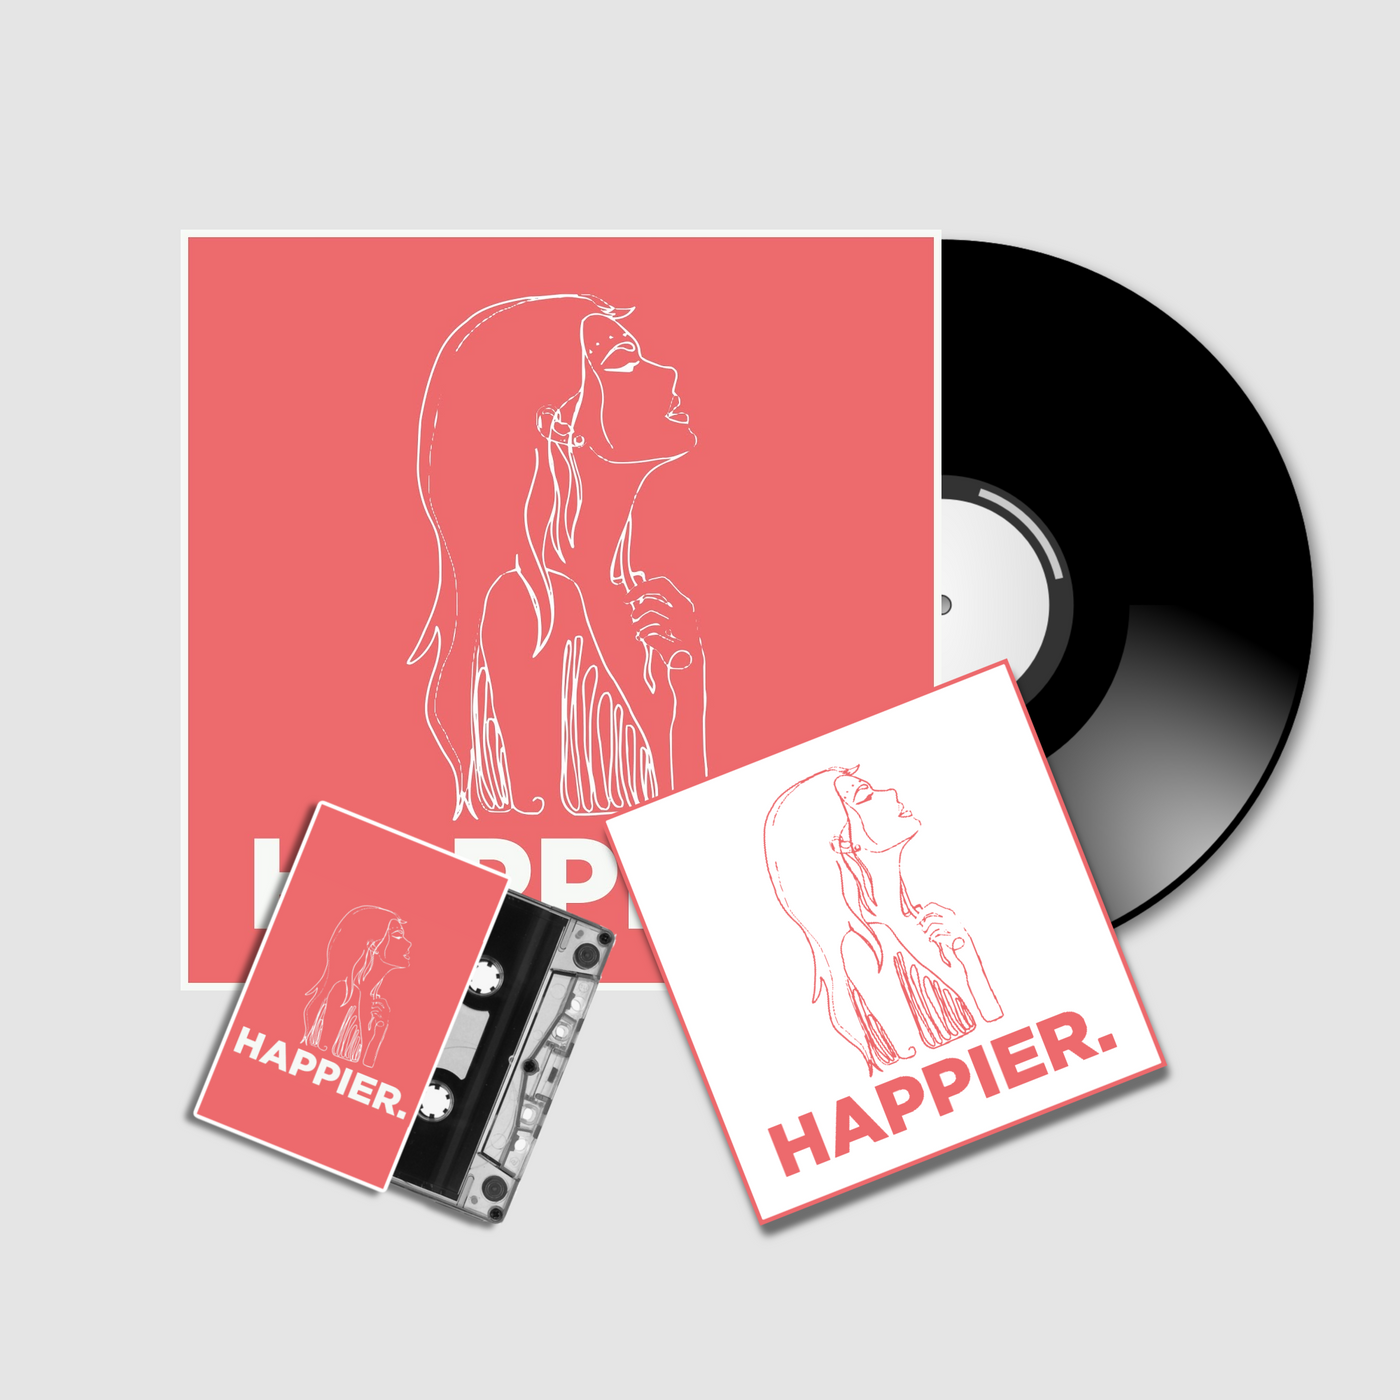 Happier. - Album Bundle